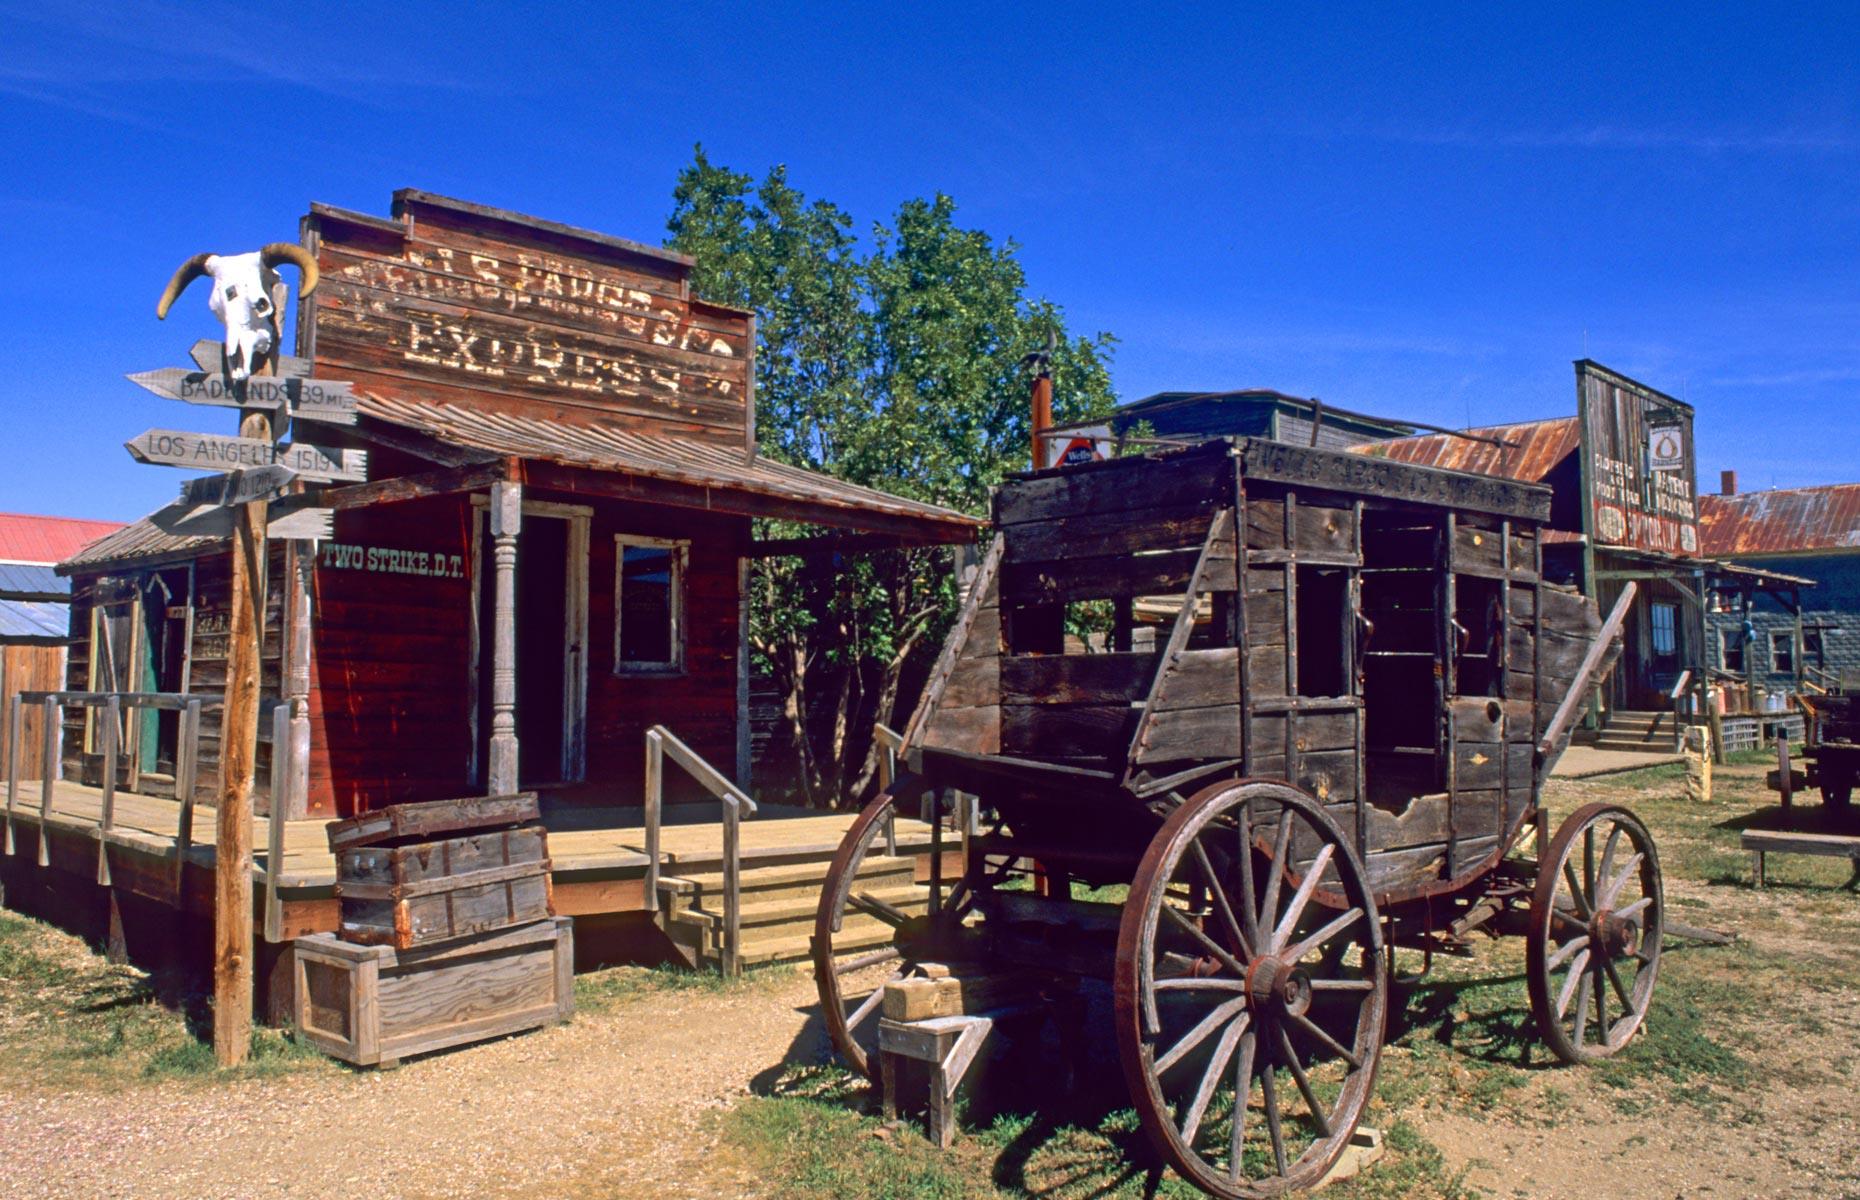 South Dakota: 1880 Town, Midland